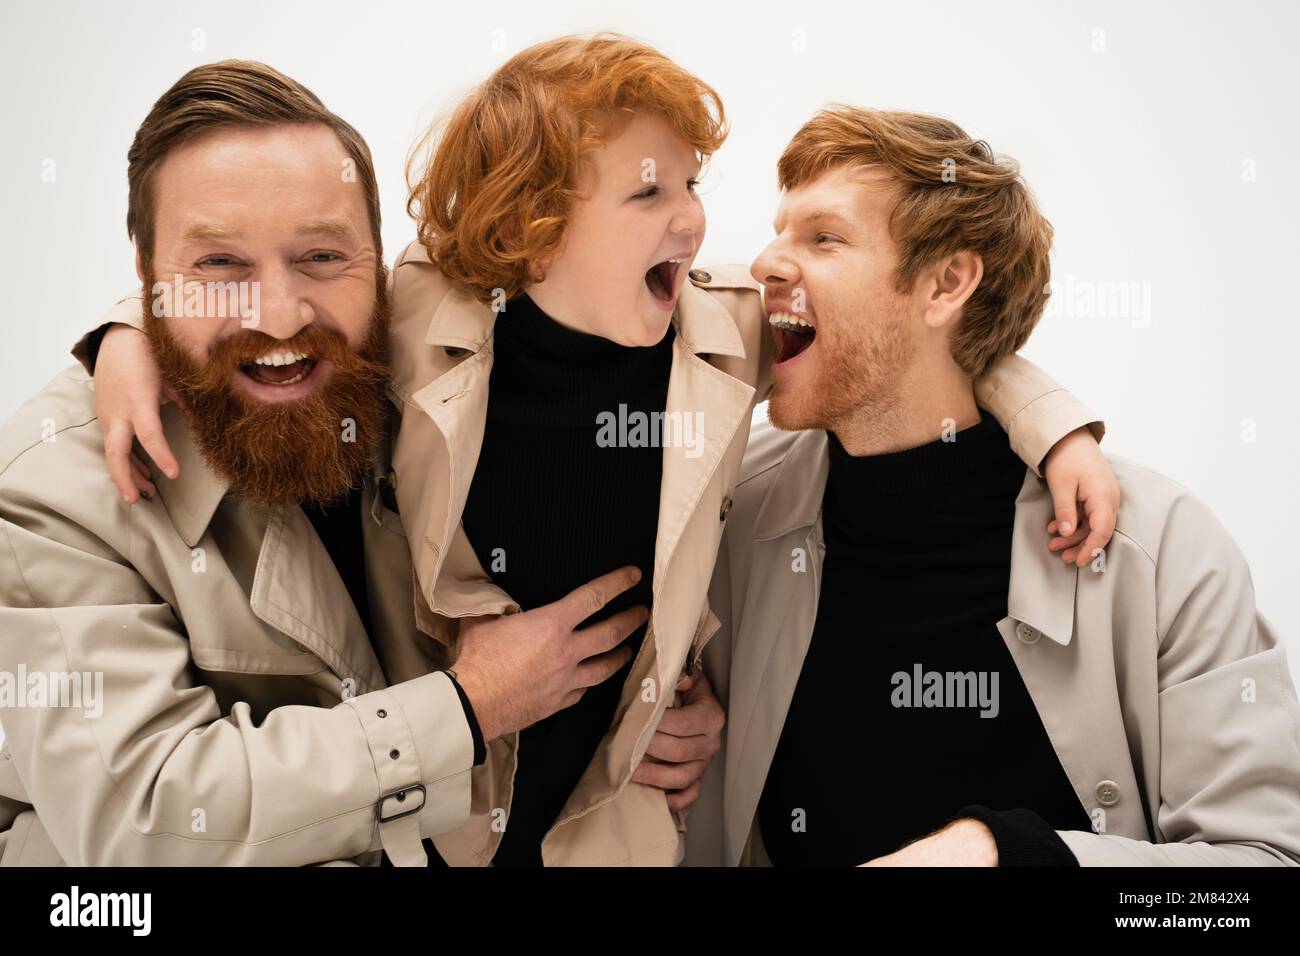 gioiosi uomini bearded e ragazzo con capelli rossi in trench cappotti ridendo isolato su grigio, immagine stock Foto Stock